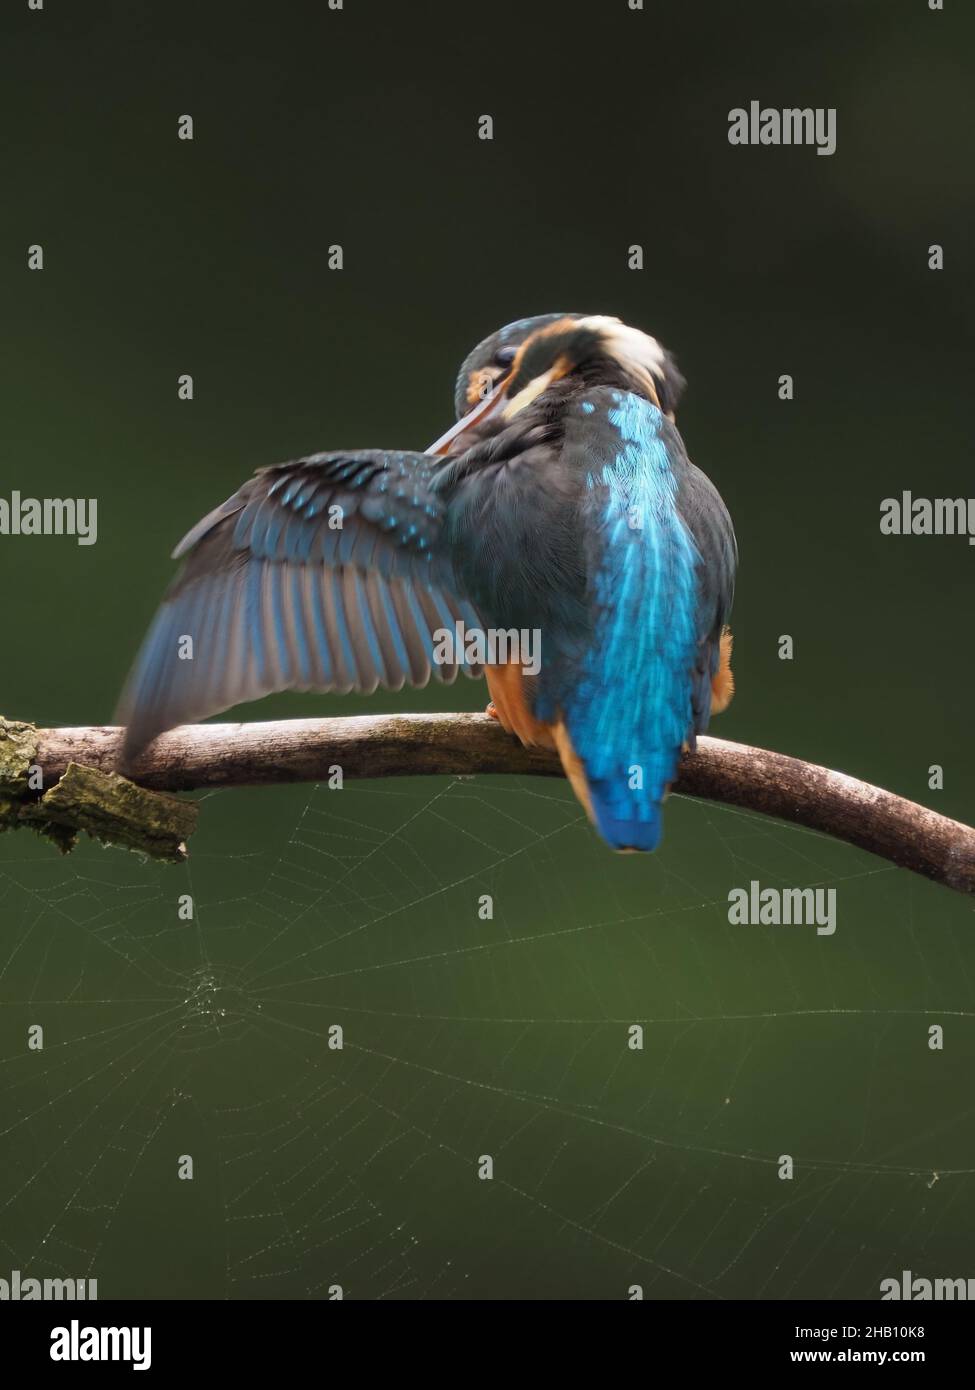 Kingfisher est un oiseau inimitable dans la campagne britannique.Un flash de bleu électrique autour de l'eau est un kingfisher!Ils plongent pour attraper des proies. Banque D'Images